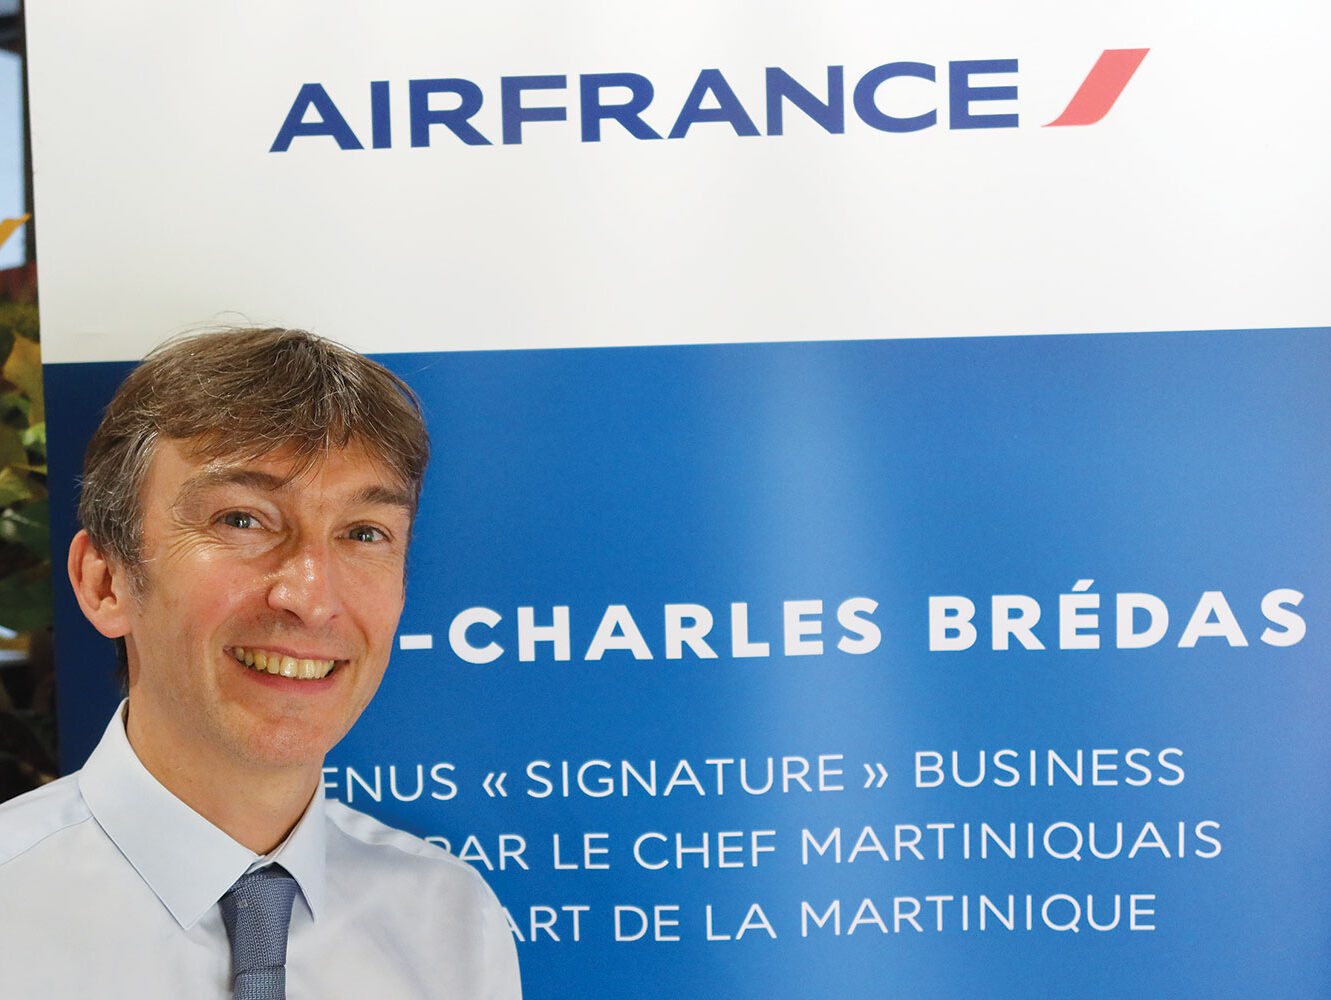 Transport aérien régional : Air France ouvre Saint-Martin et signe avec le chef Brédas